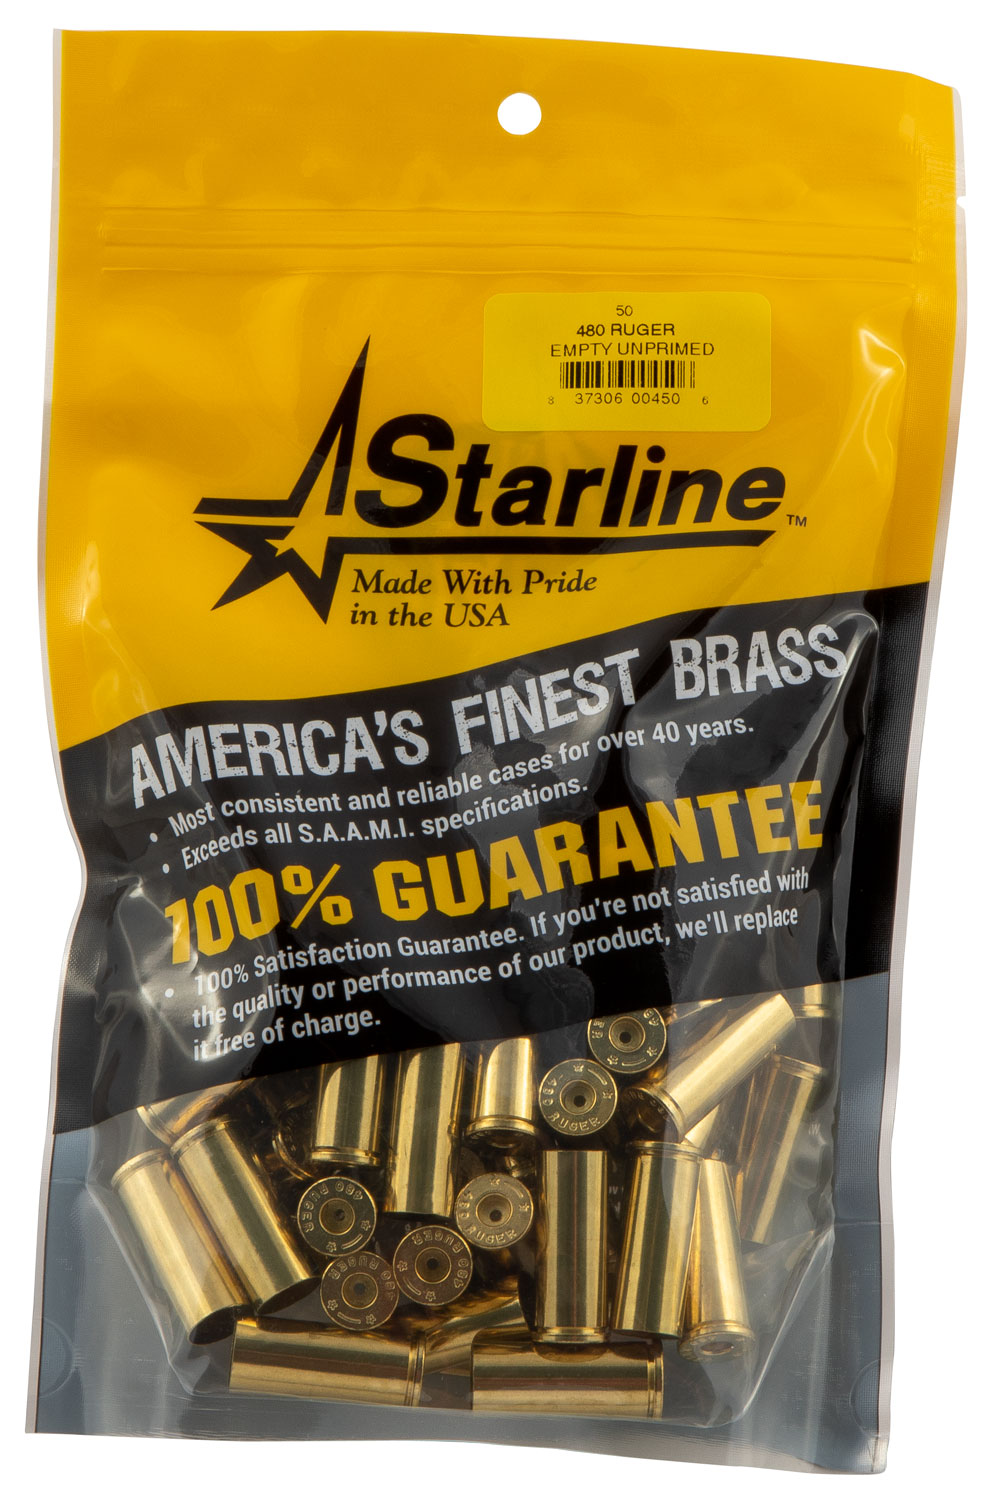 Starline Brass Star480REUP5 Unprimed Cases 480 Ruger 50/Pack